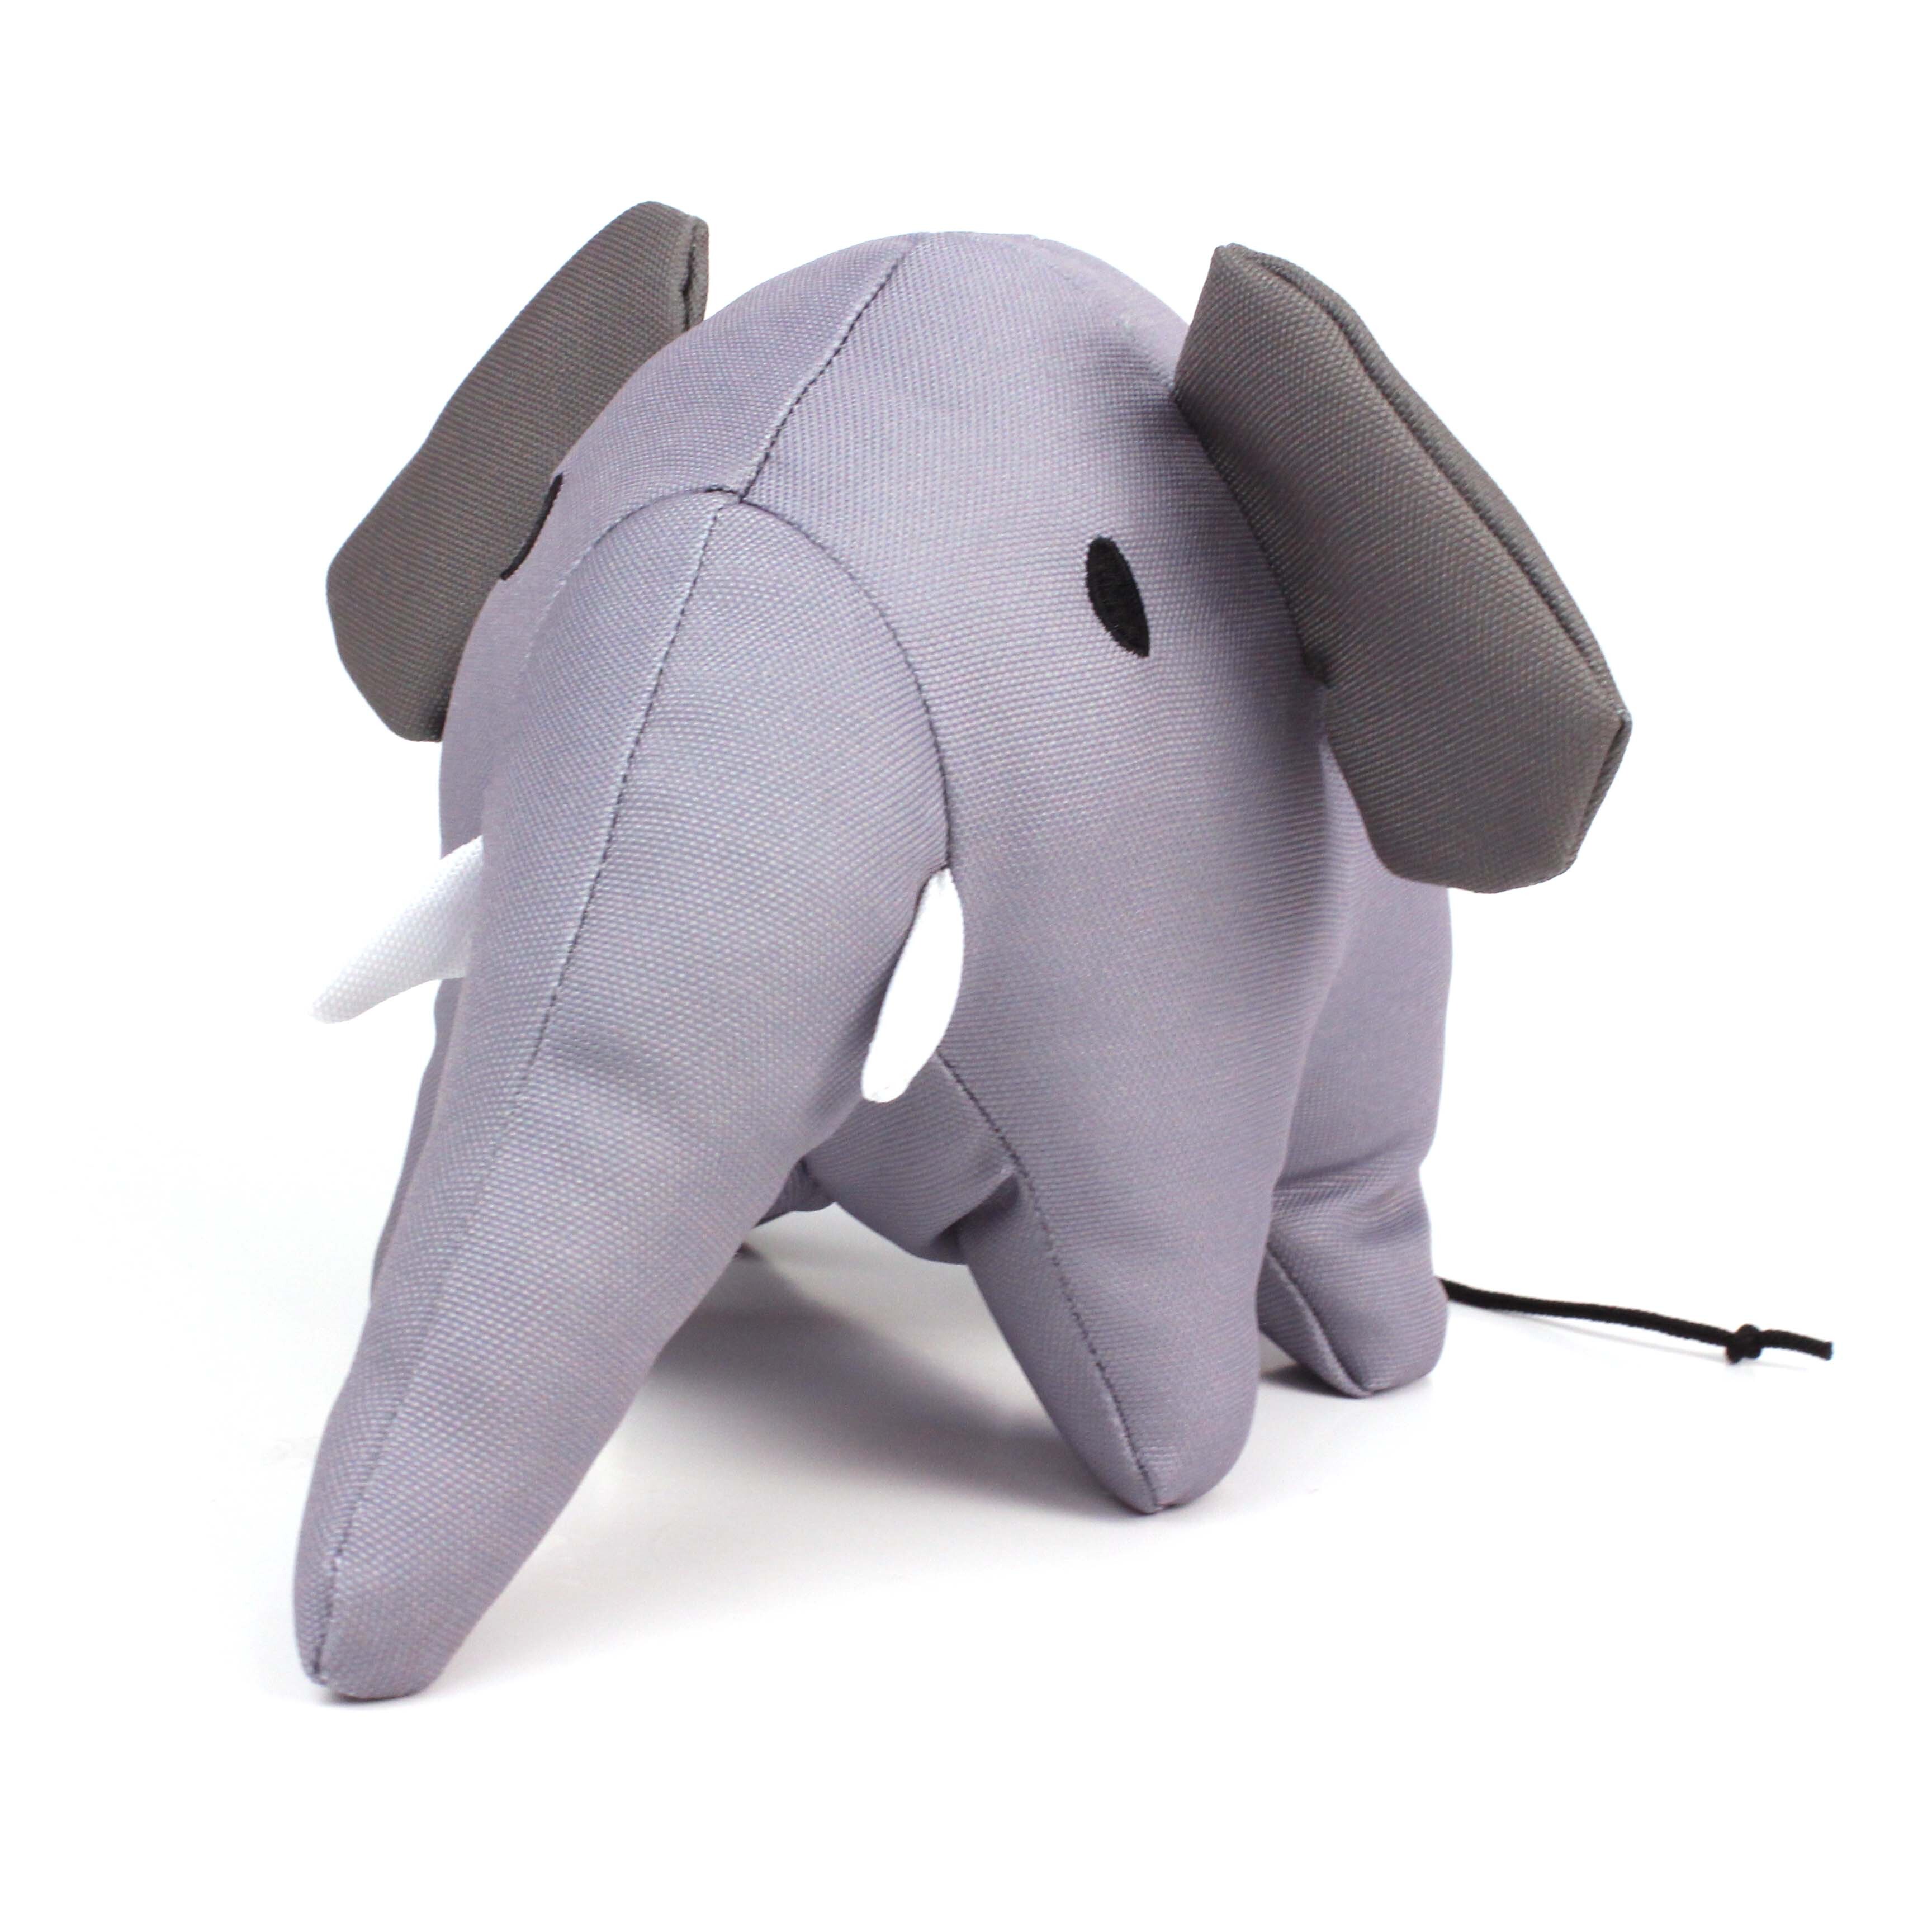 BECO Spielzeug Plüsch Elefant M